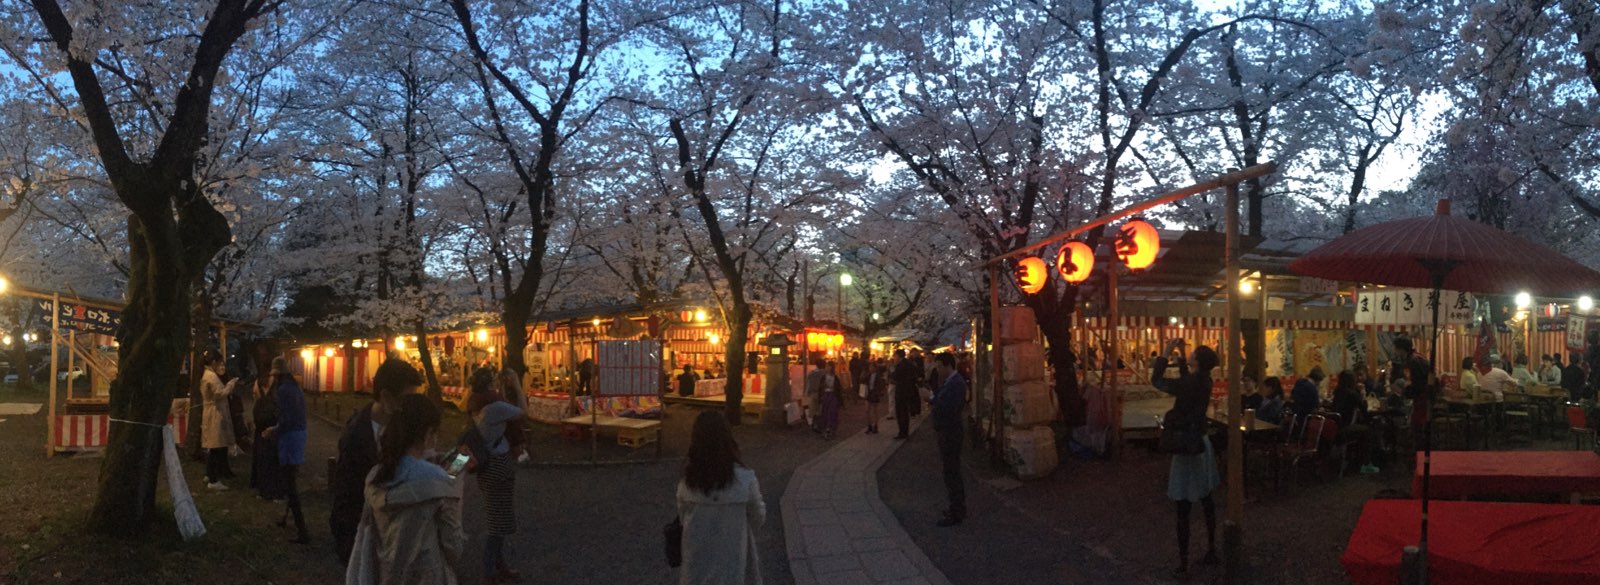 超多樱花树～～～可以在一边赏樱一边吃烤肉～～～终于赏了夜樱啦～～～